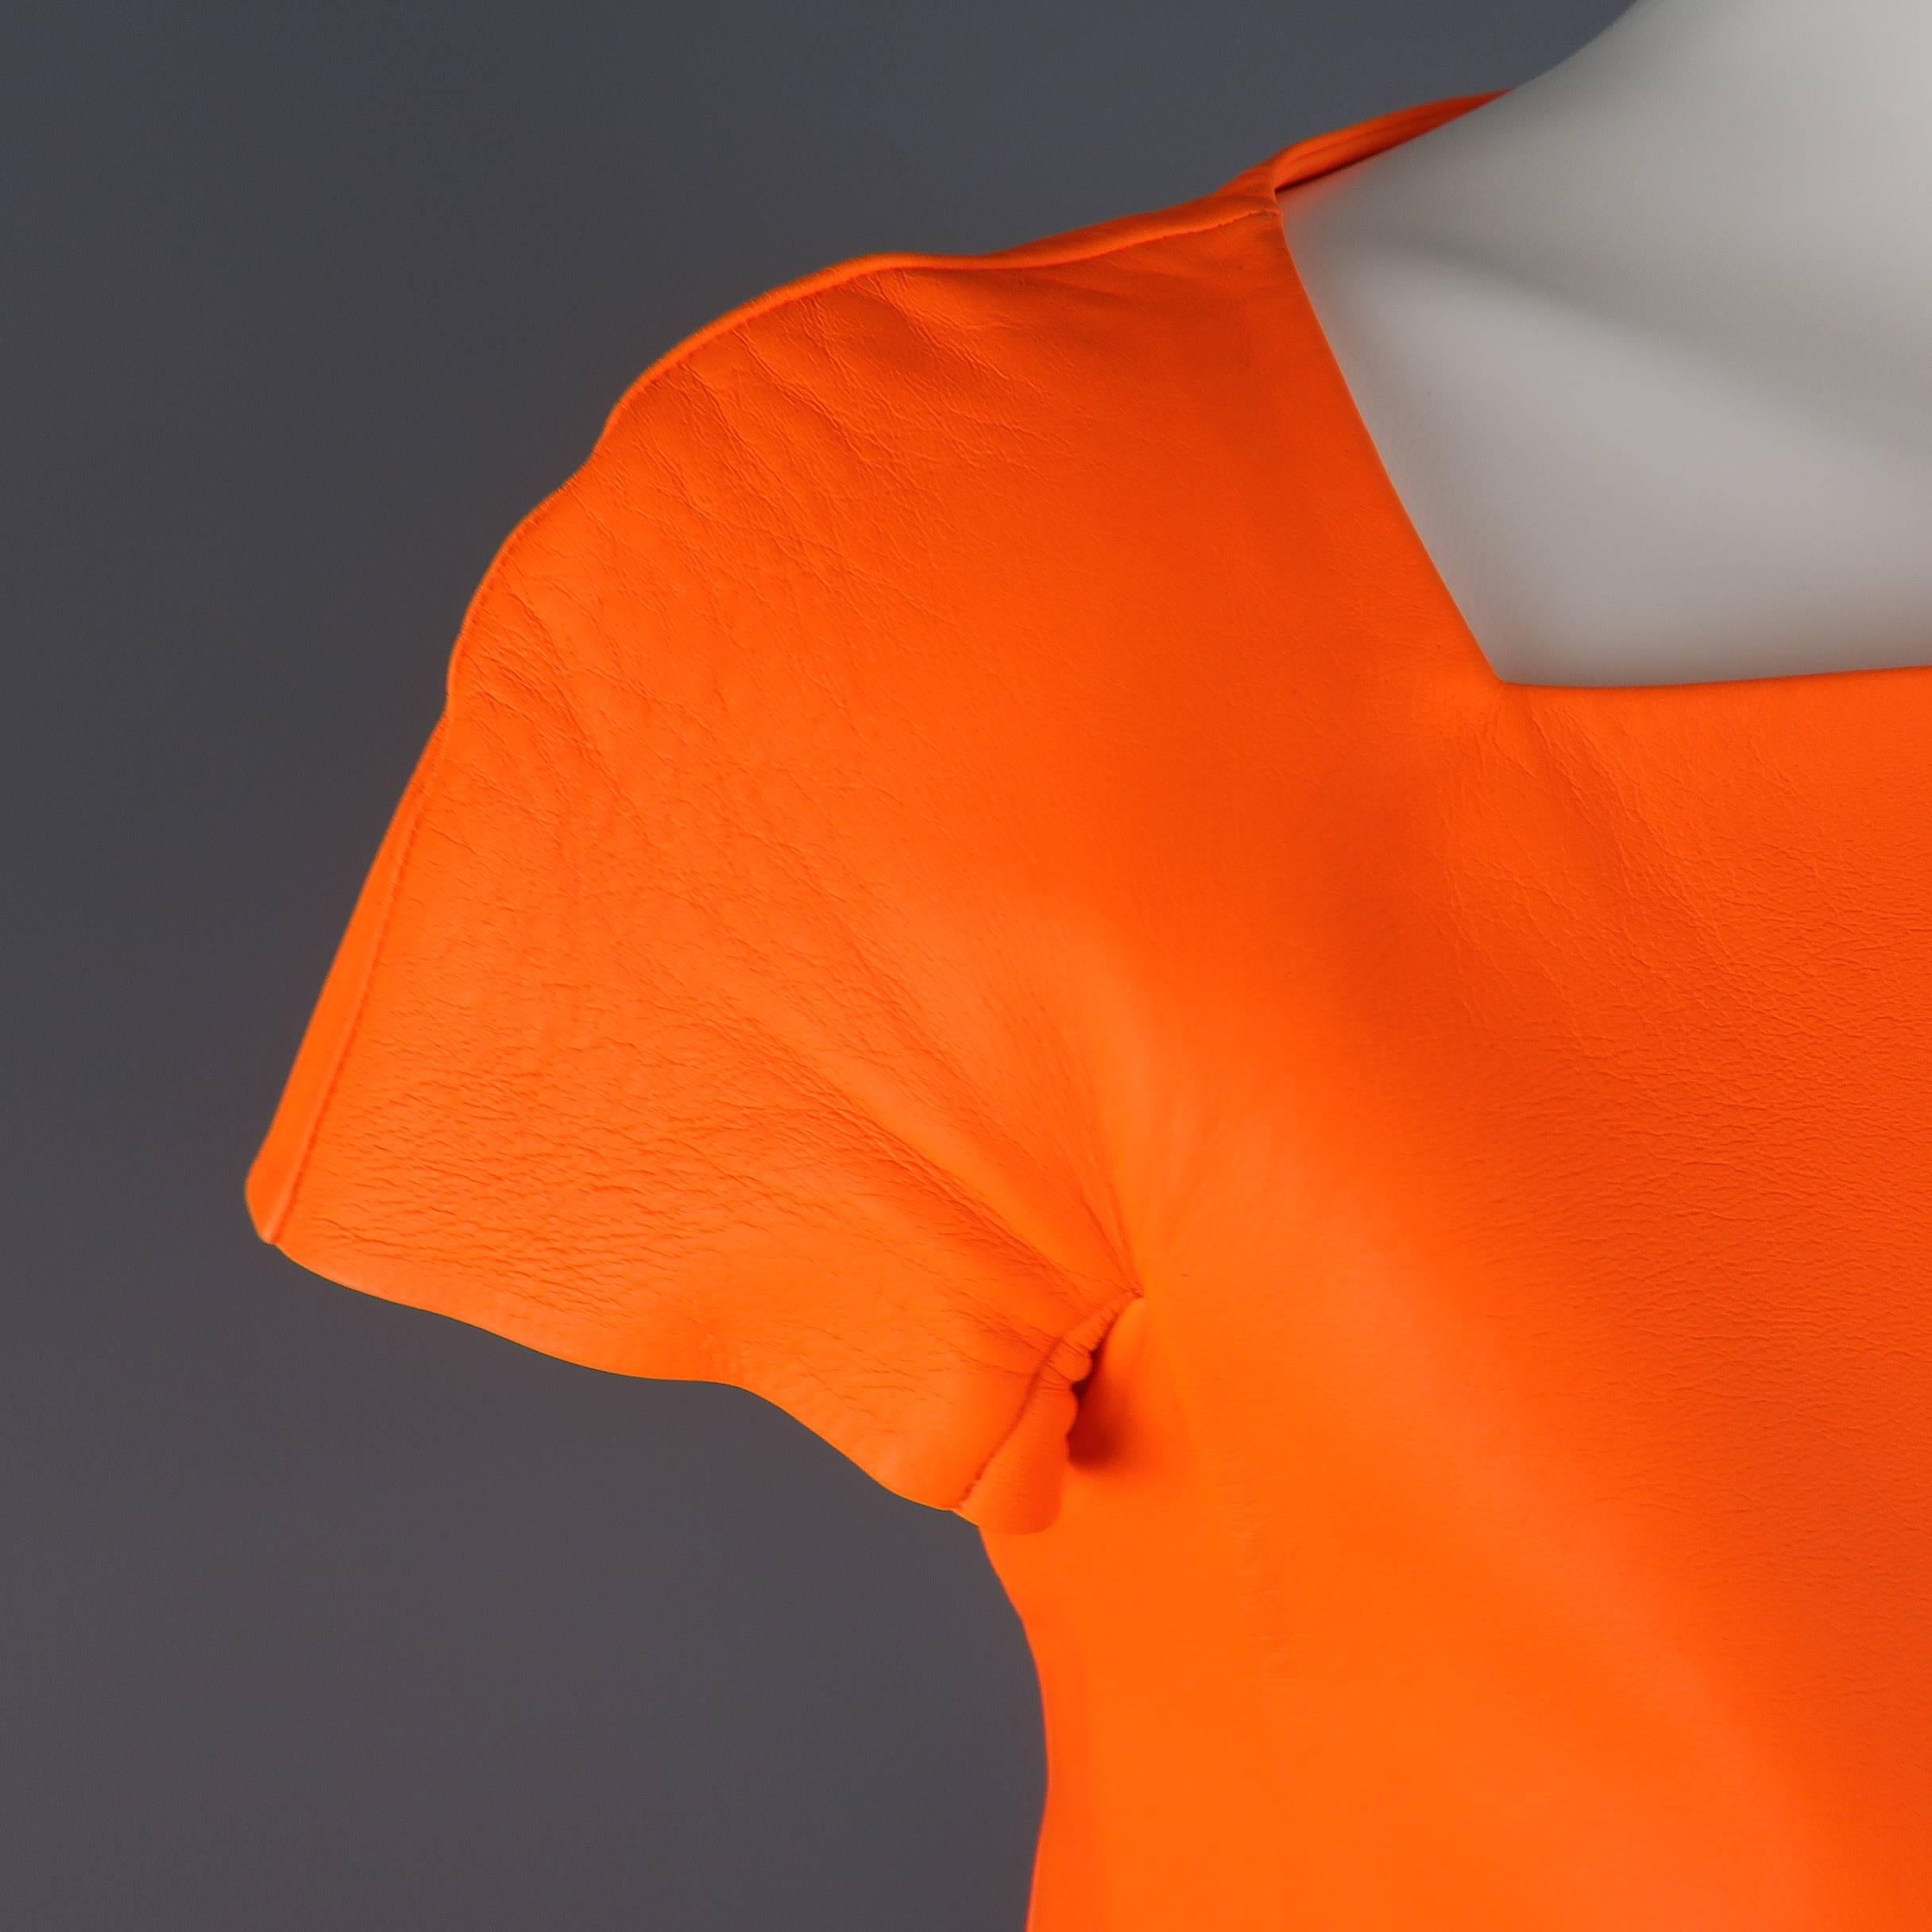 Ralph Lauren Neon Orange Leather A Line Dress, Spring 2014 Runway 1